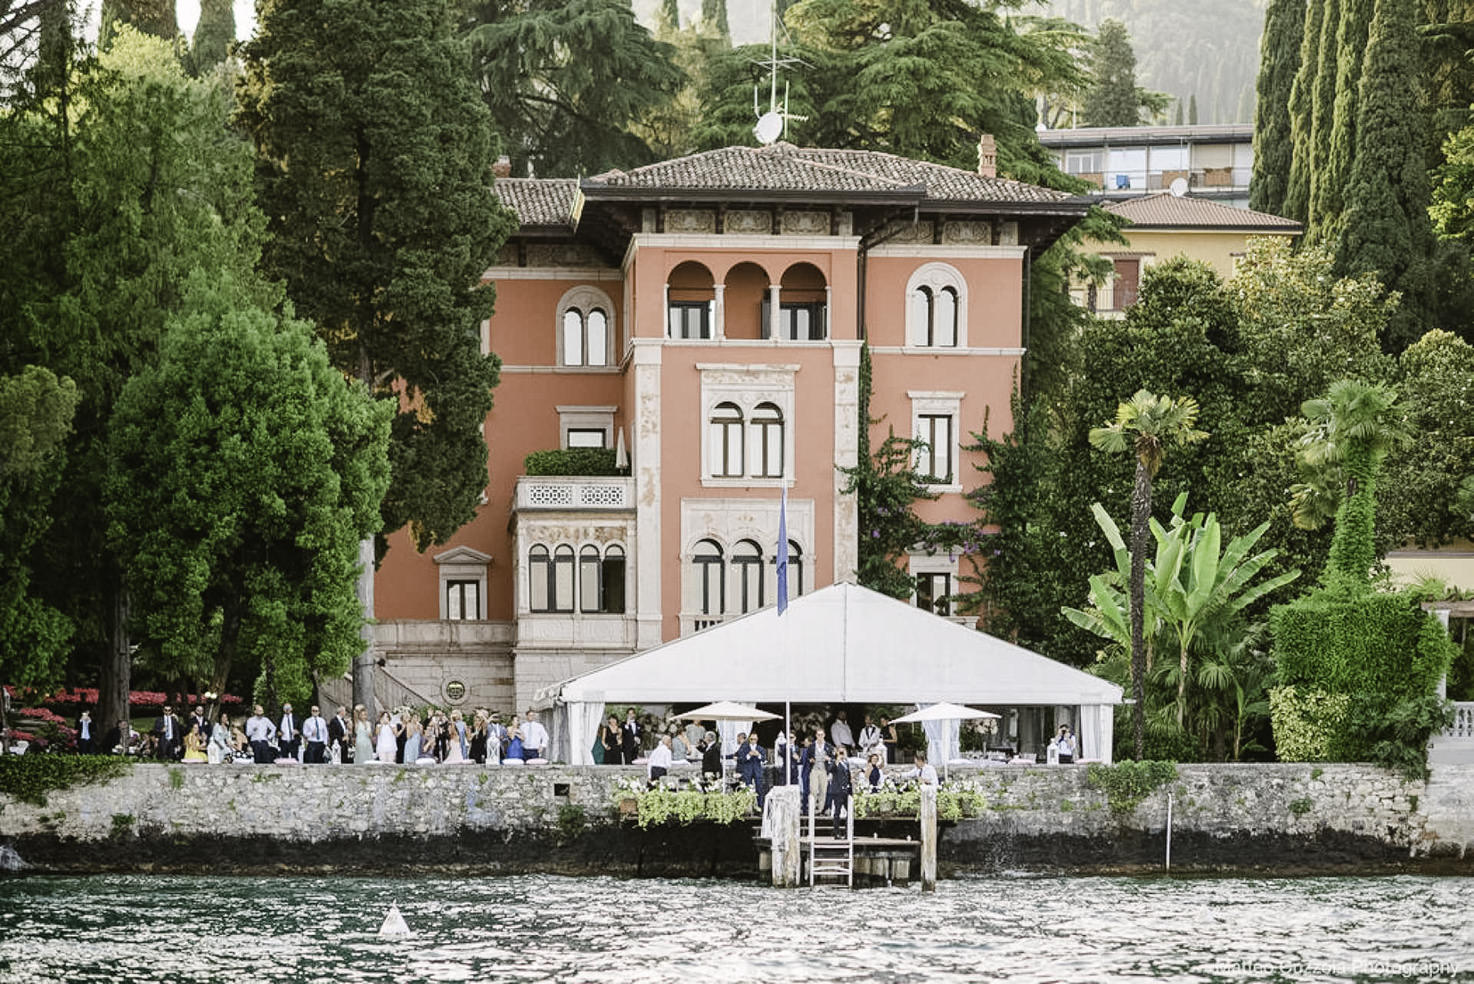 Façade of Villa Fiordaliso, Lake Garda